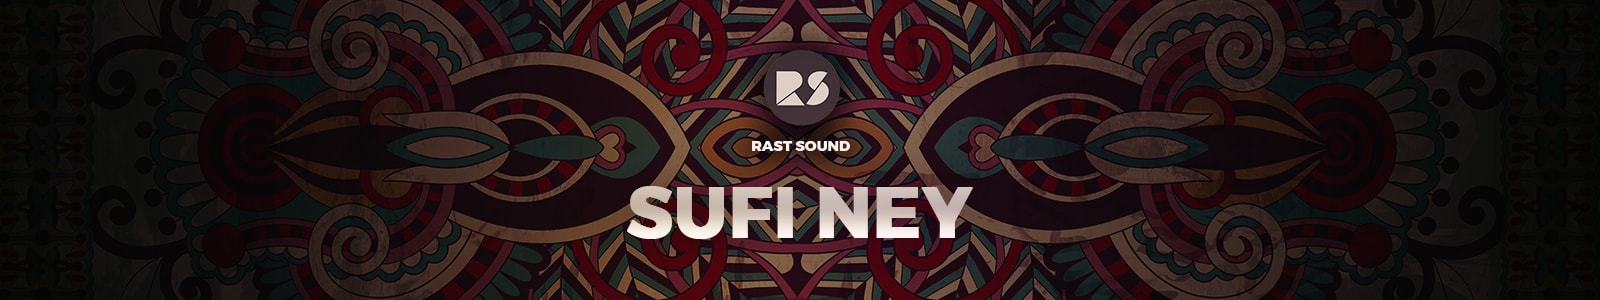 Sufi Ney II by rast sound